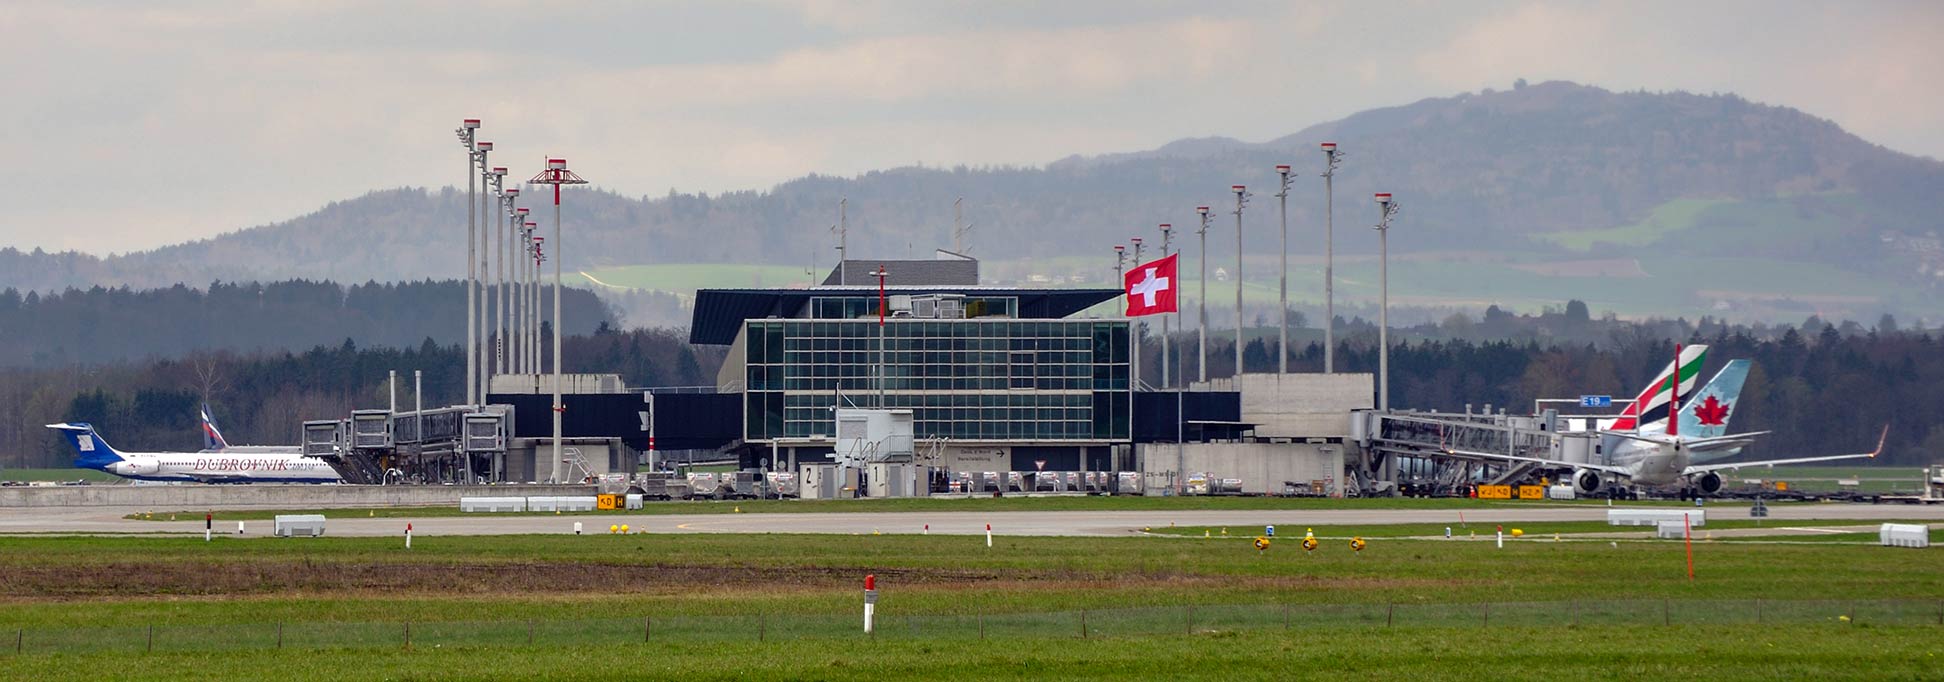 Zürich Kloten International Airport (ZRH), Switzerland